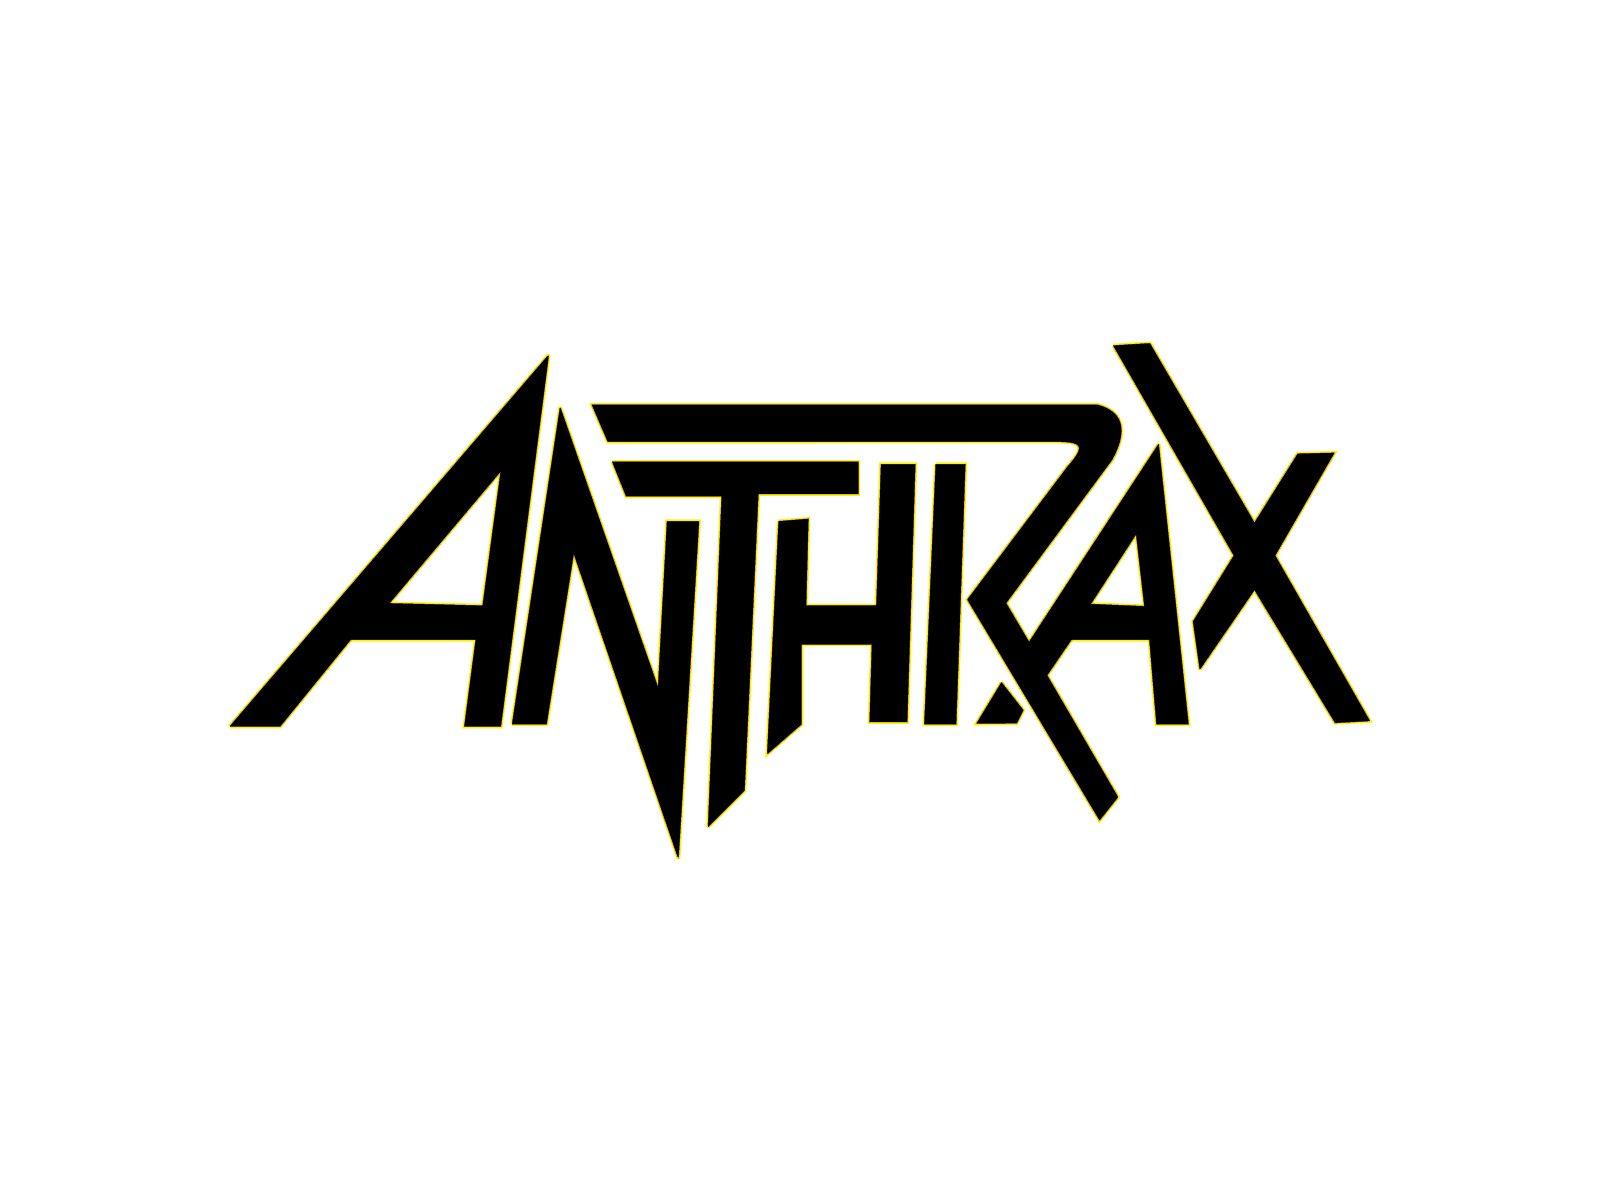 Anthrax logo and Anthrax wallpaper. Band logos band logos, metal bands logos, punk bands logos